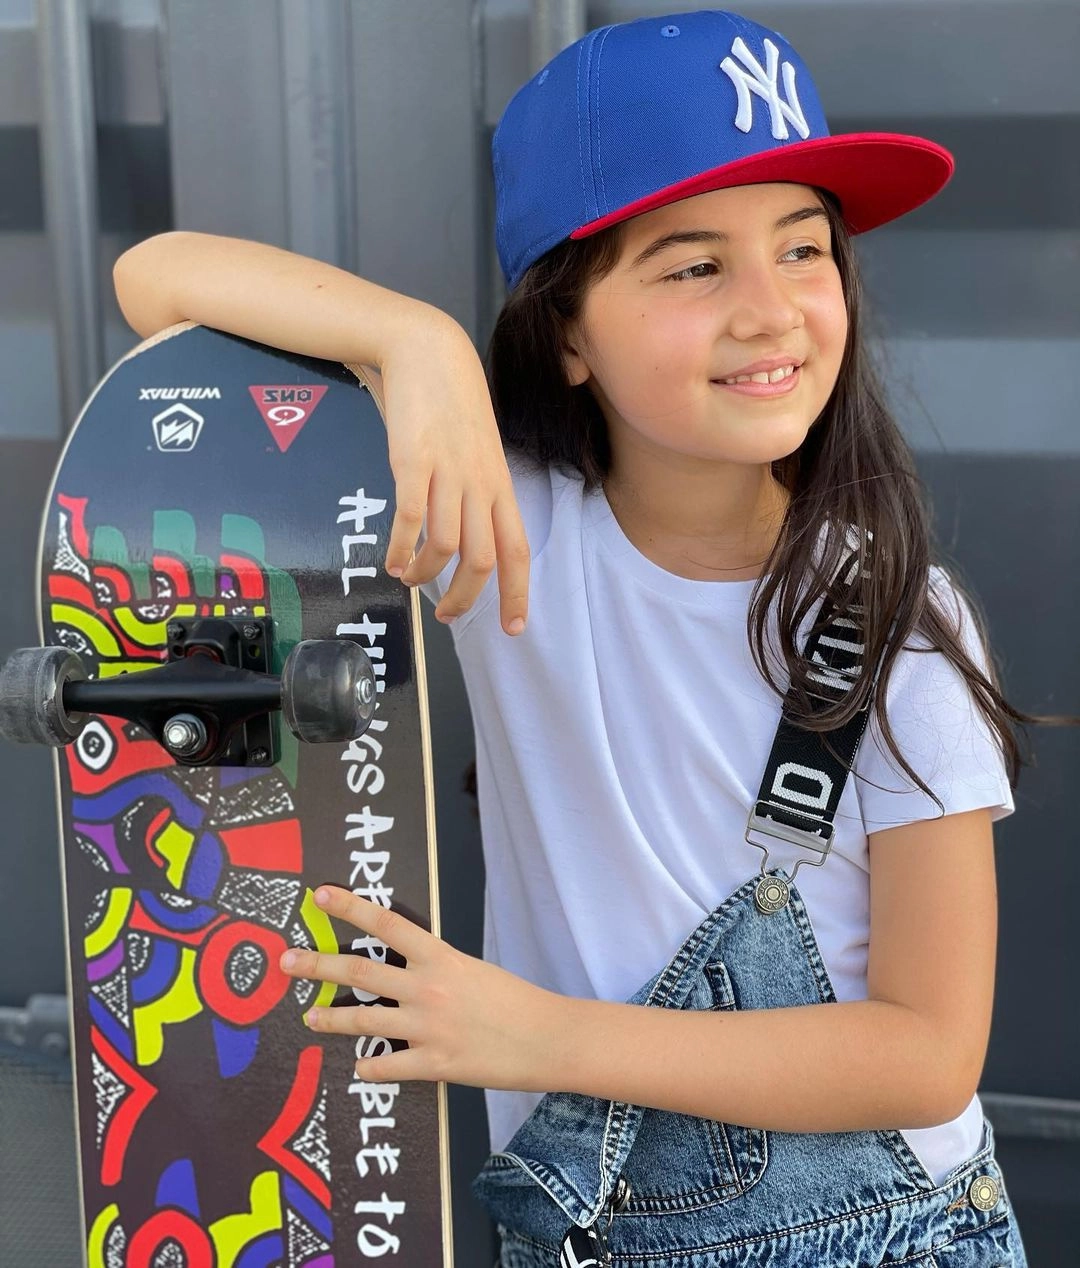 Несмотря на свою занятость, юная звезда диджеинга дистанционно учится в школе, много читает, катается на скейтборде и часто гуляет с друзьями